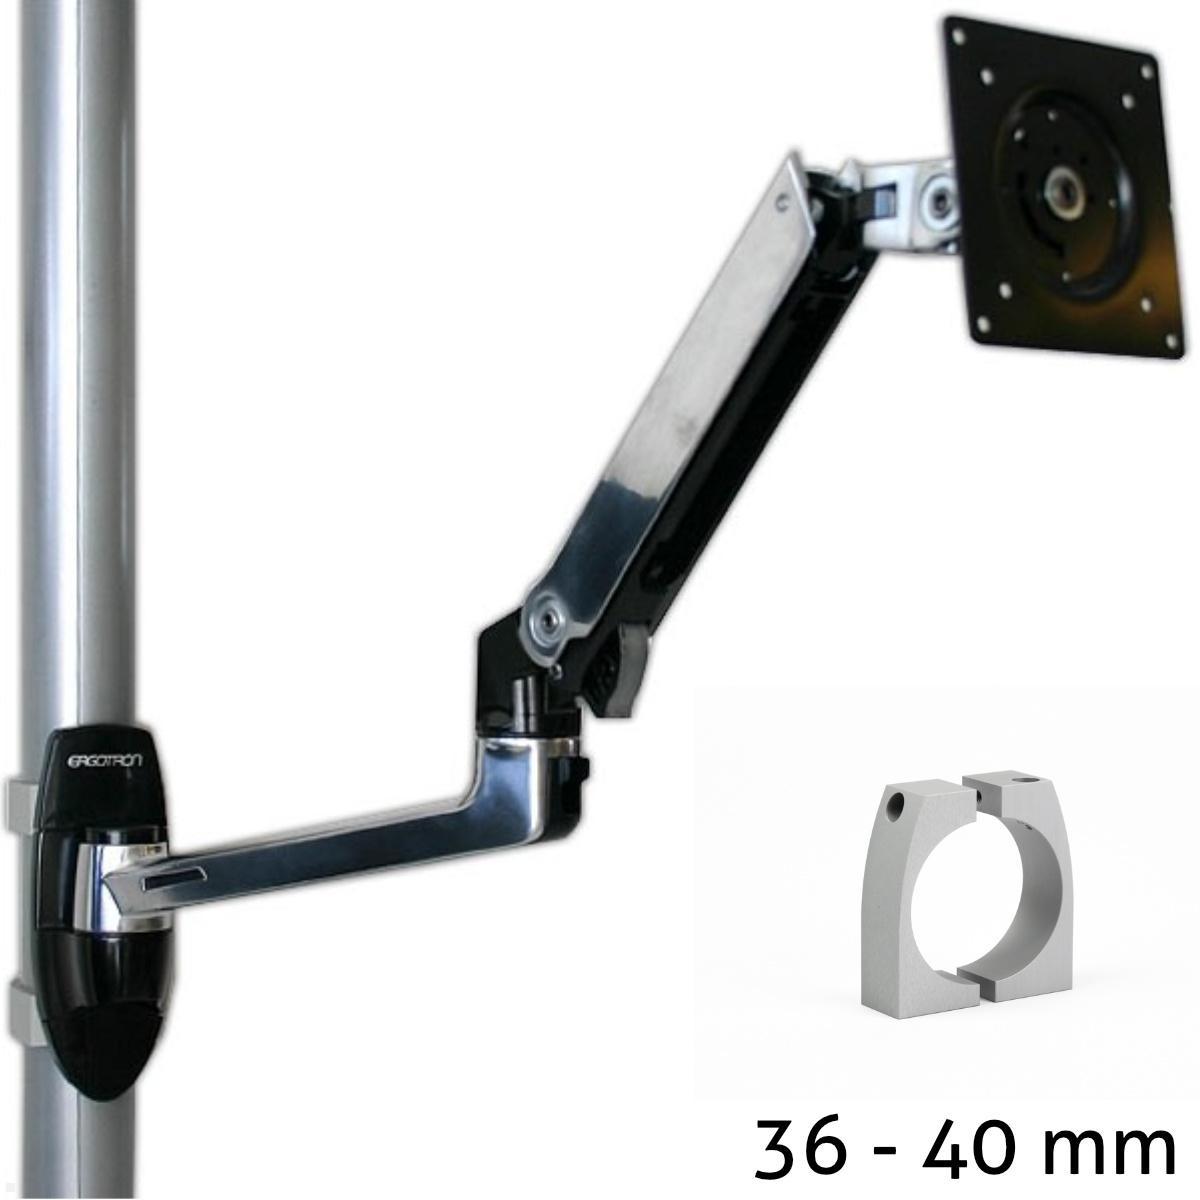 Ergotron LX Arm Monitorhalterung f?r Rohre / S?ulen 36-40 mm, silber von Ergotron